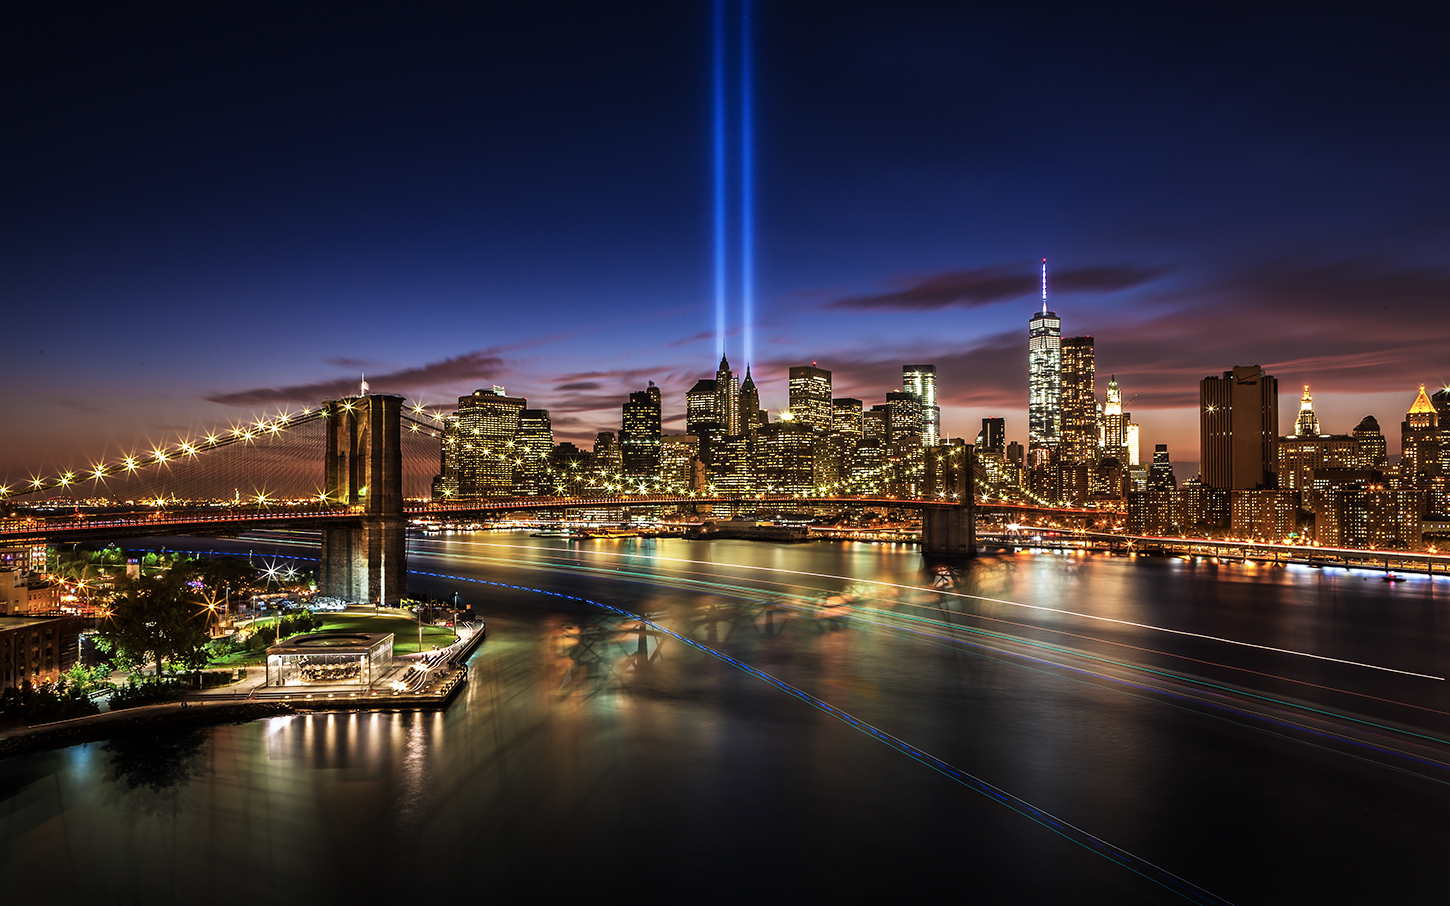 September 11th 2014